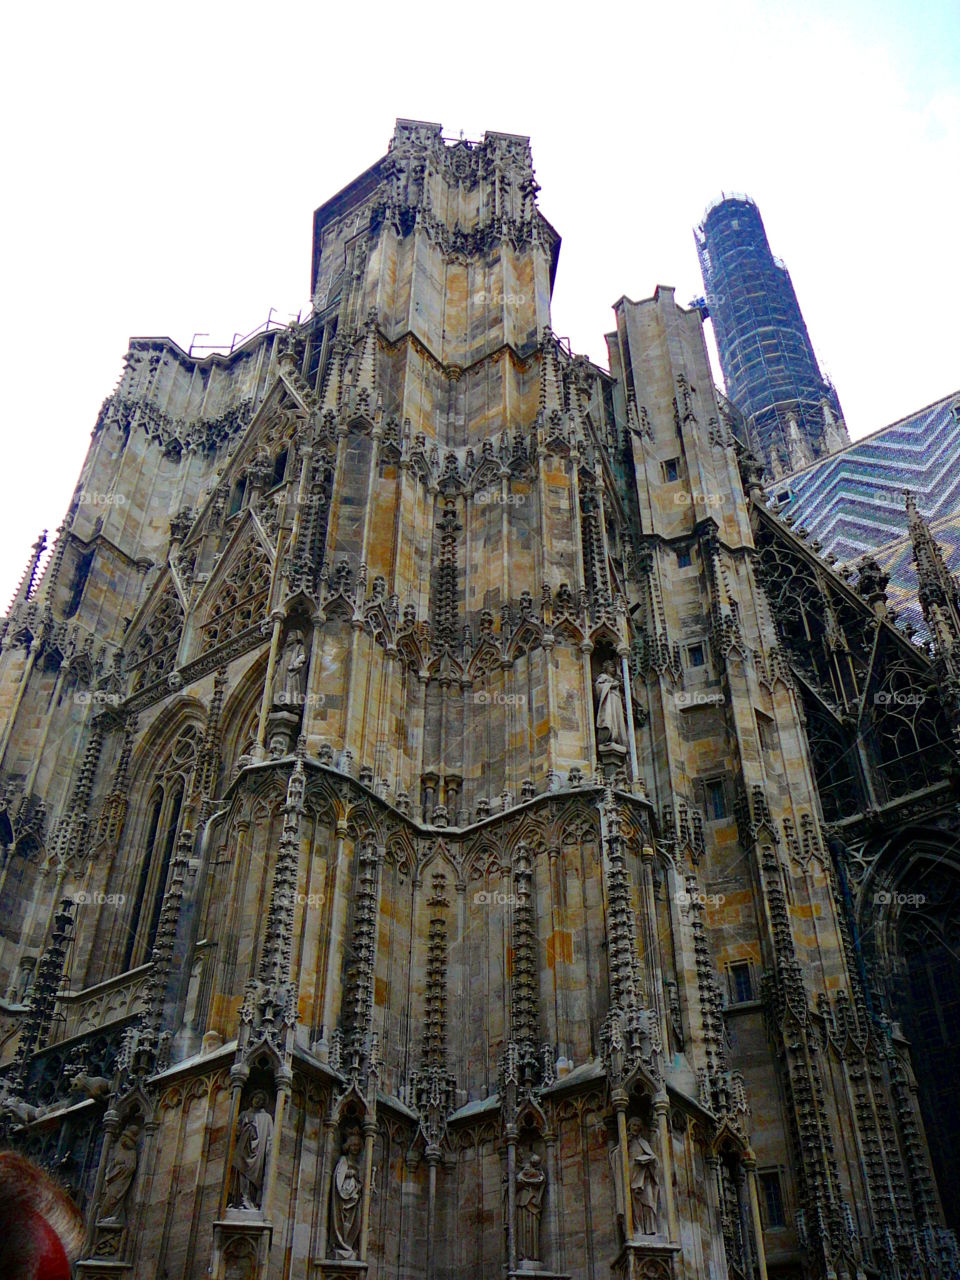 Vienna Austria_539. Church steeple in Vienna